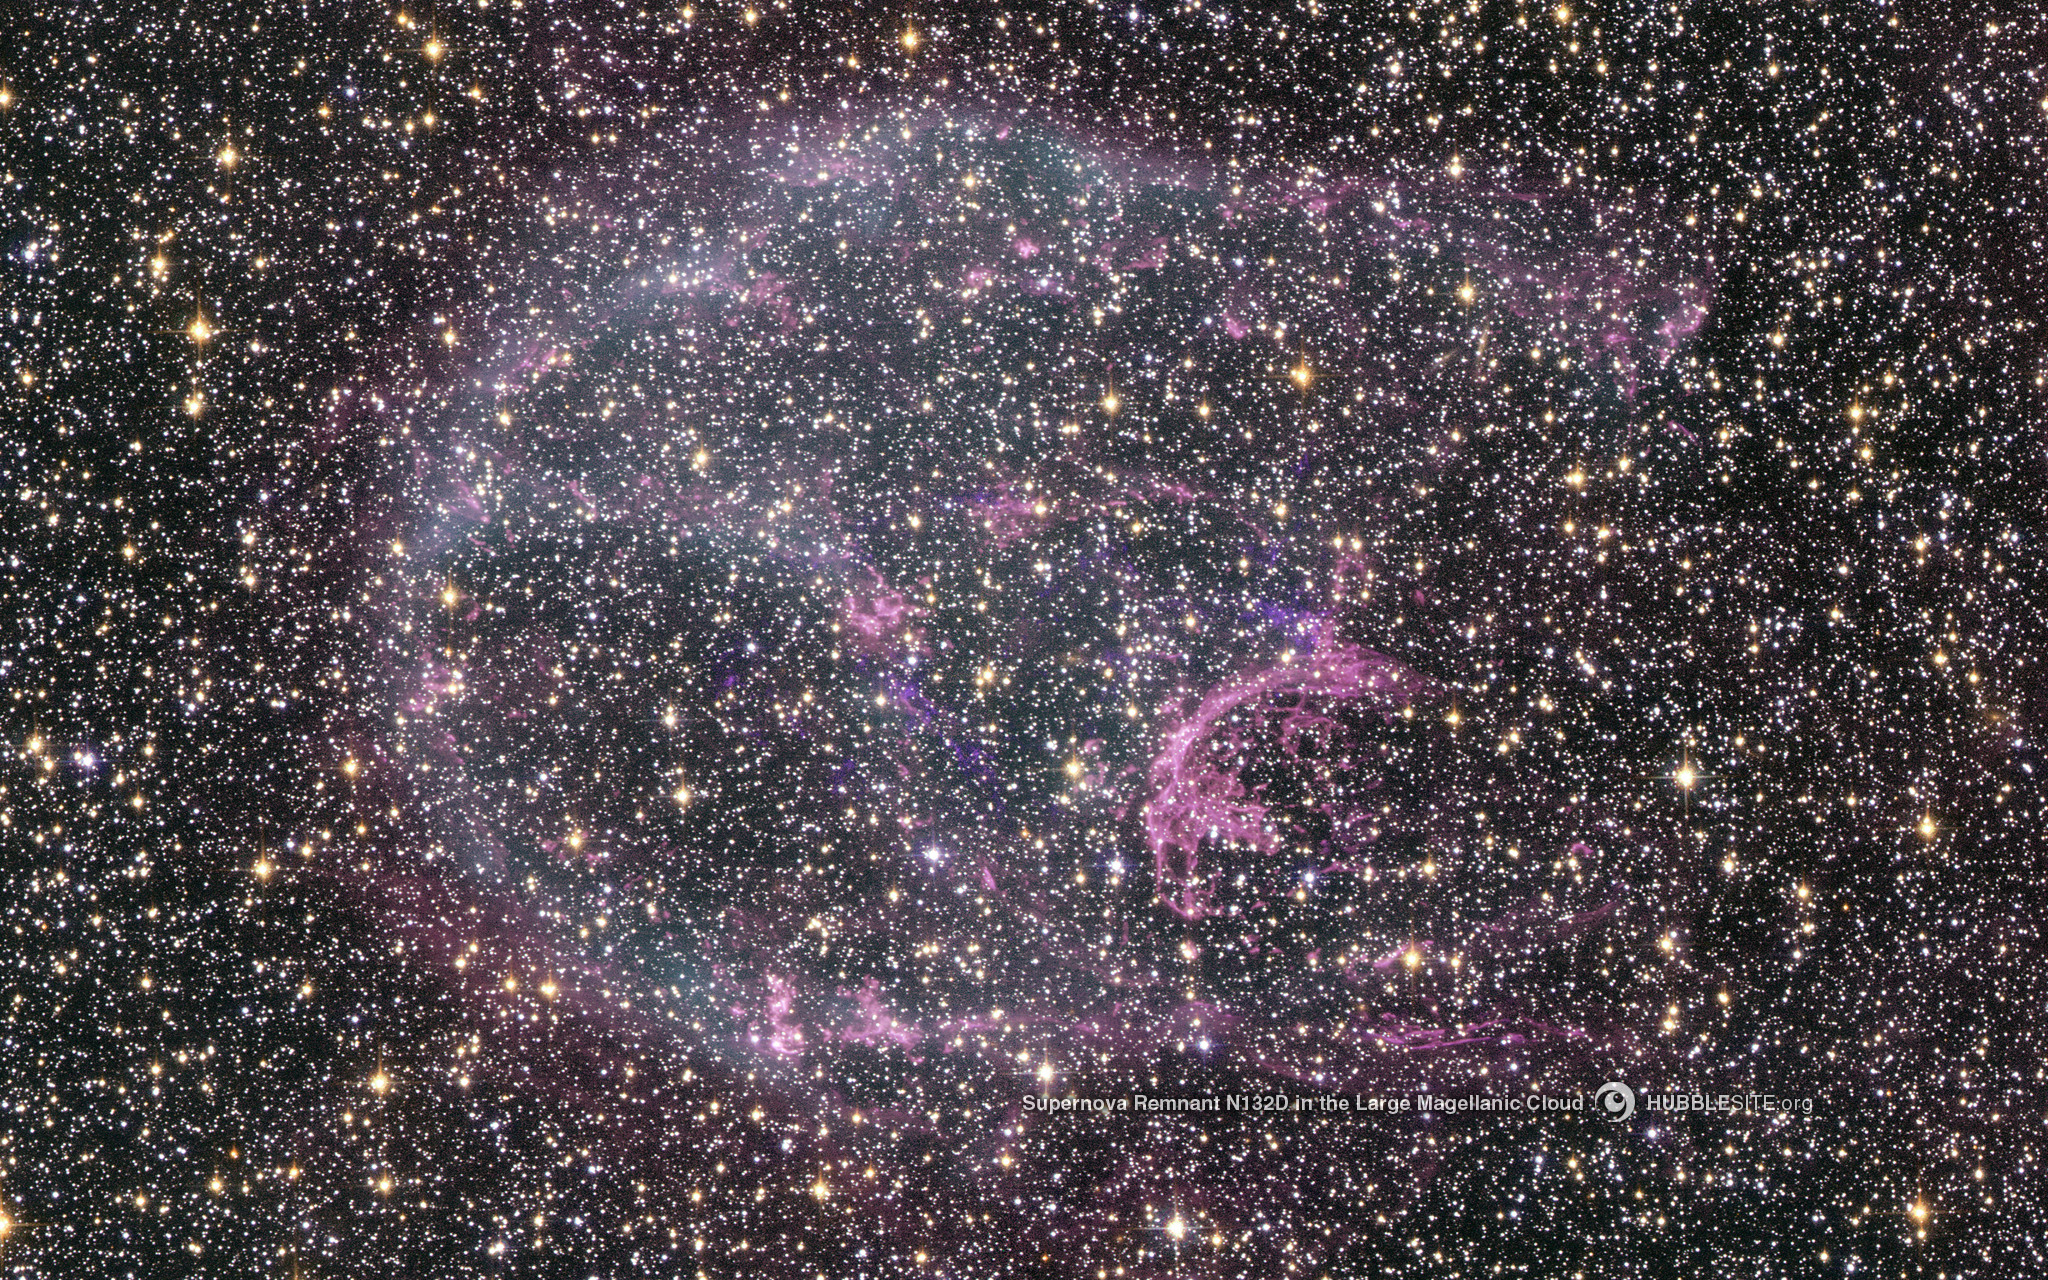 Supernova Remnant LMC N132D